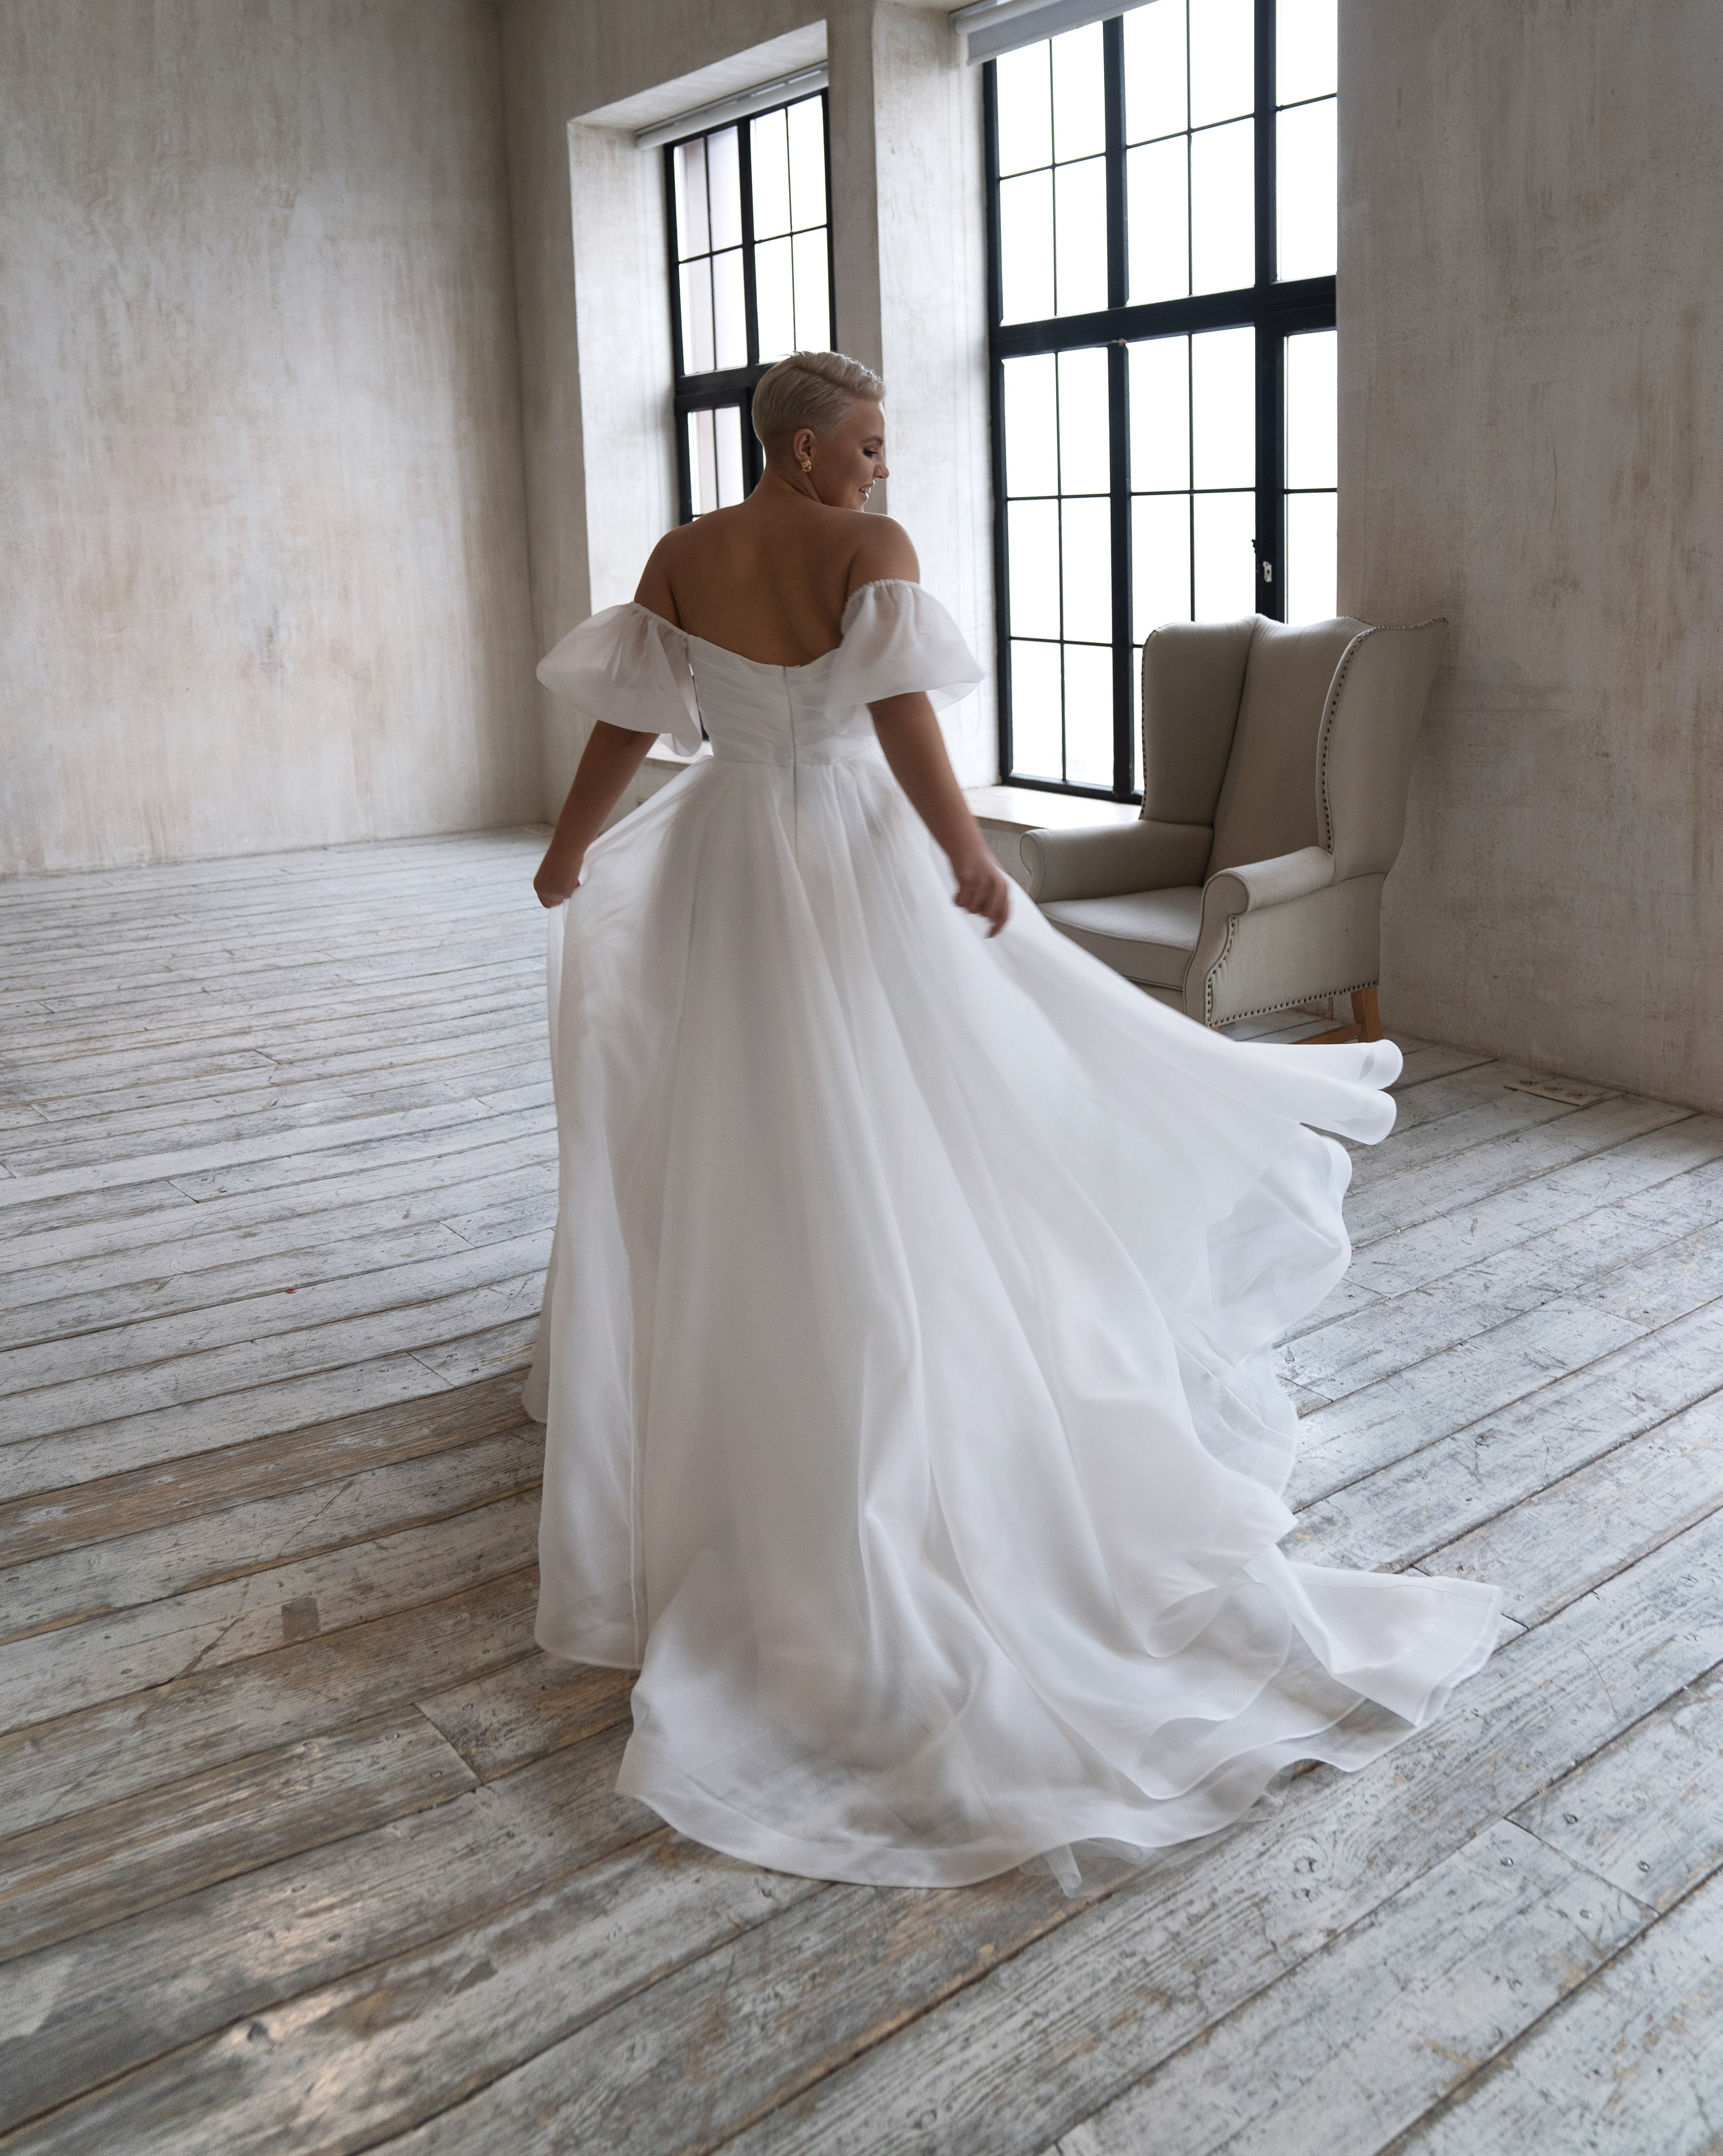 Свадебное платье «Орита плюс сайз» Марта — купить в Ростове платье Орита из коллекции 2021 года